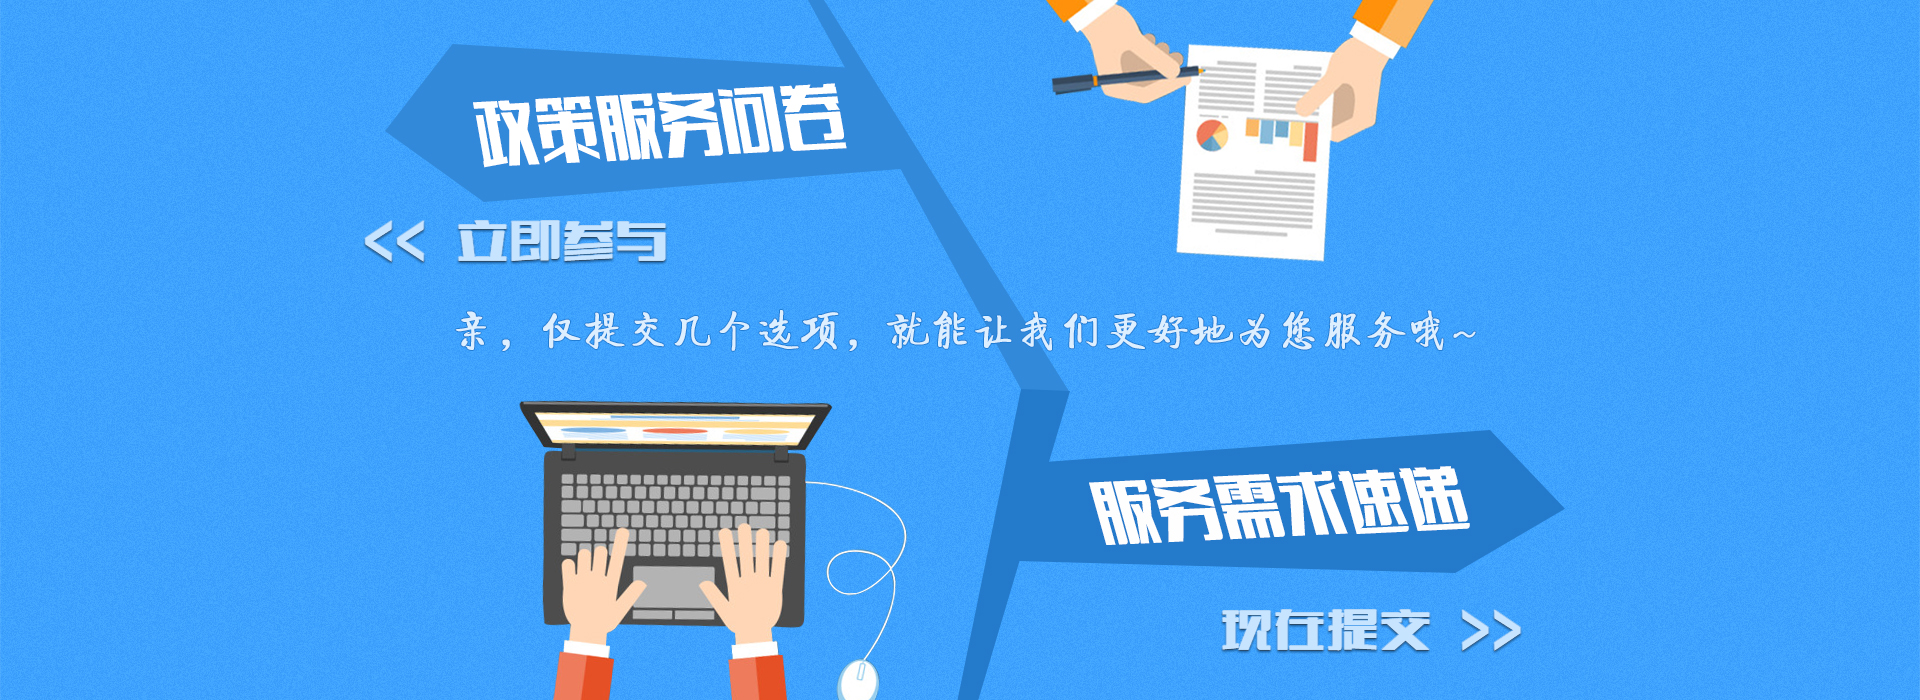 深圳市小微企业政策宣传月